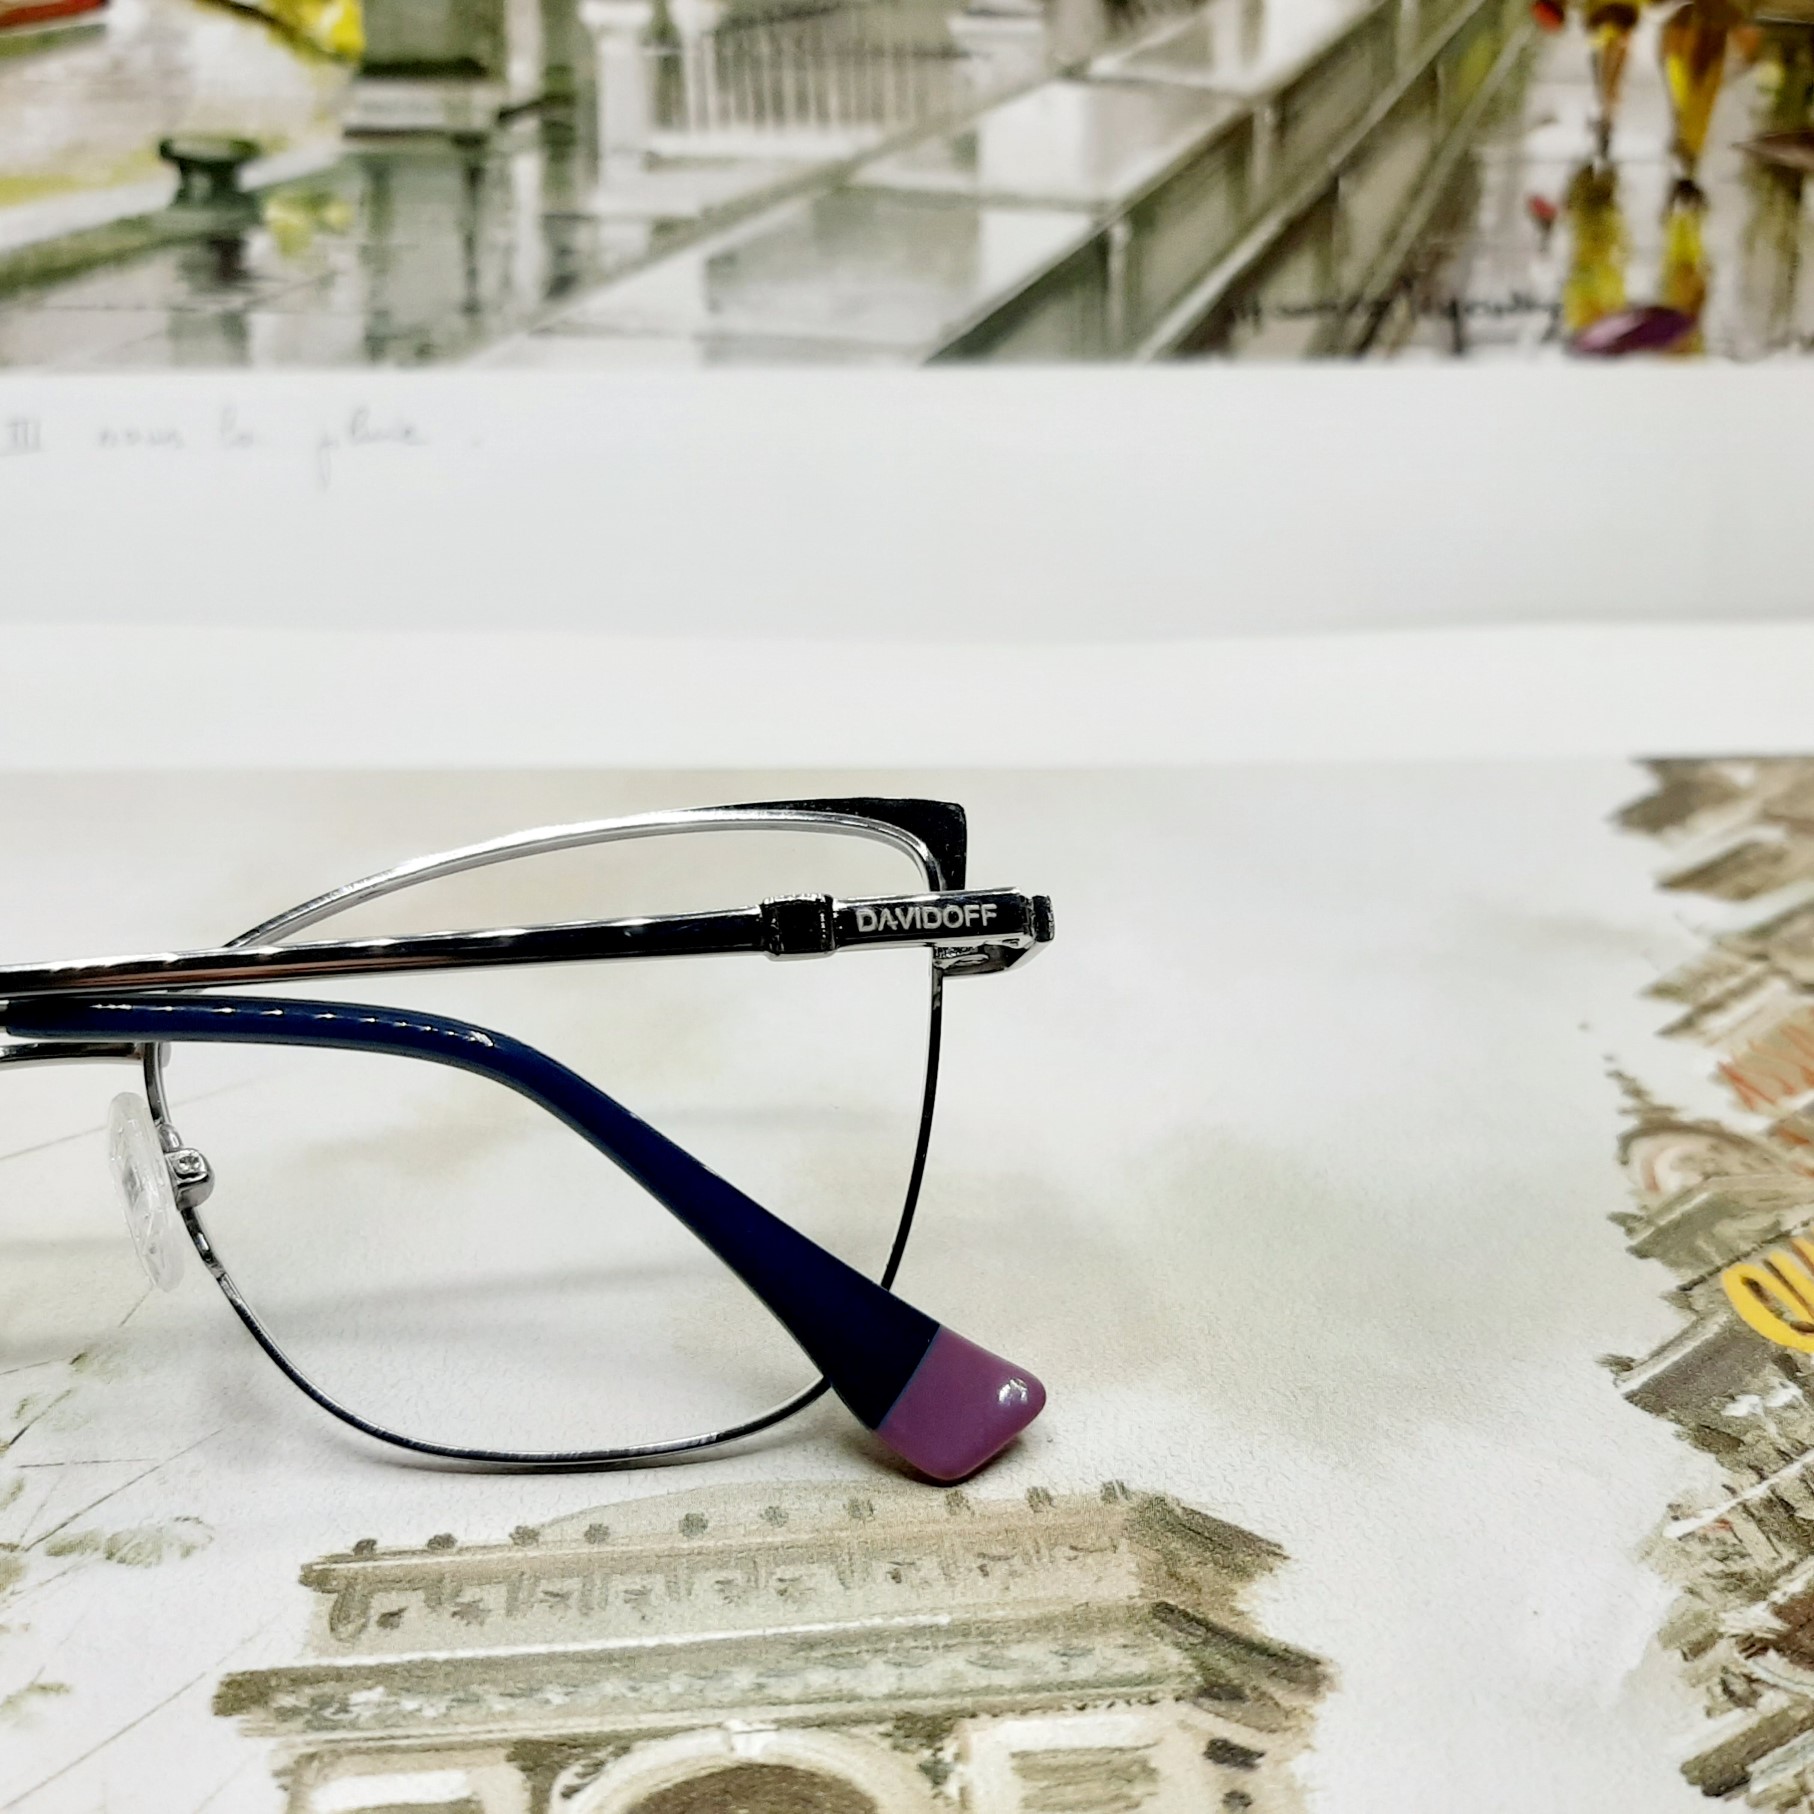 فریم عینک طبی زنانه داویدف مدل D8307c3 -  - 5